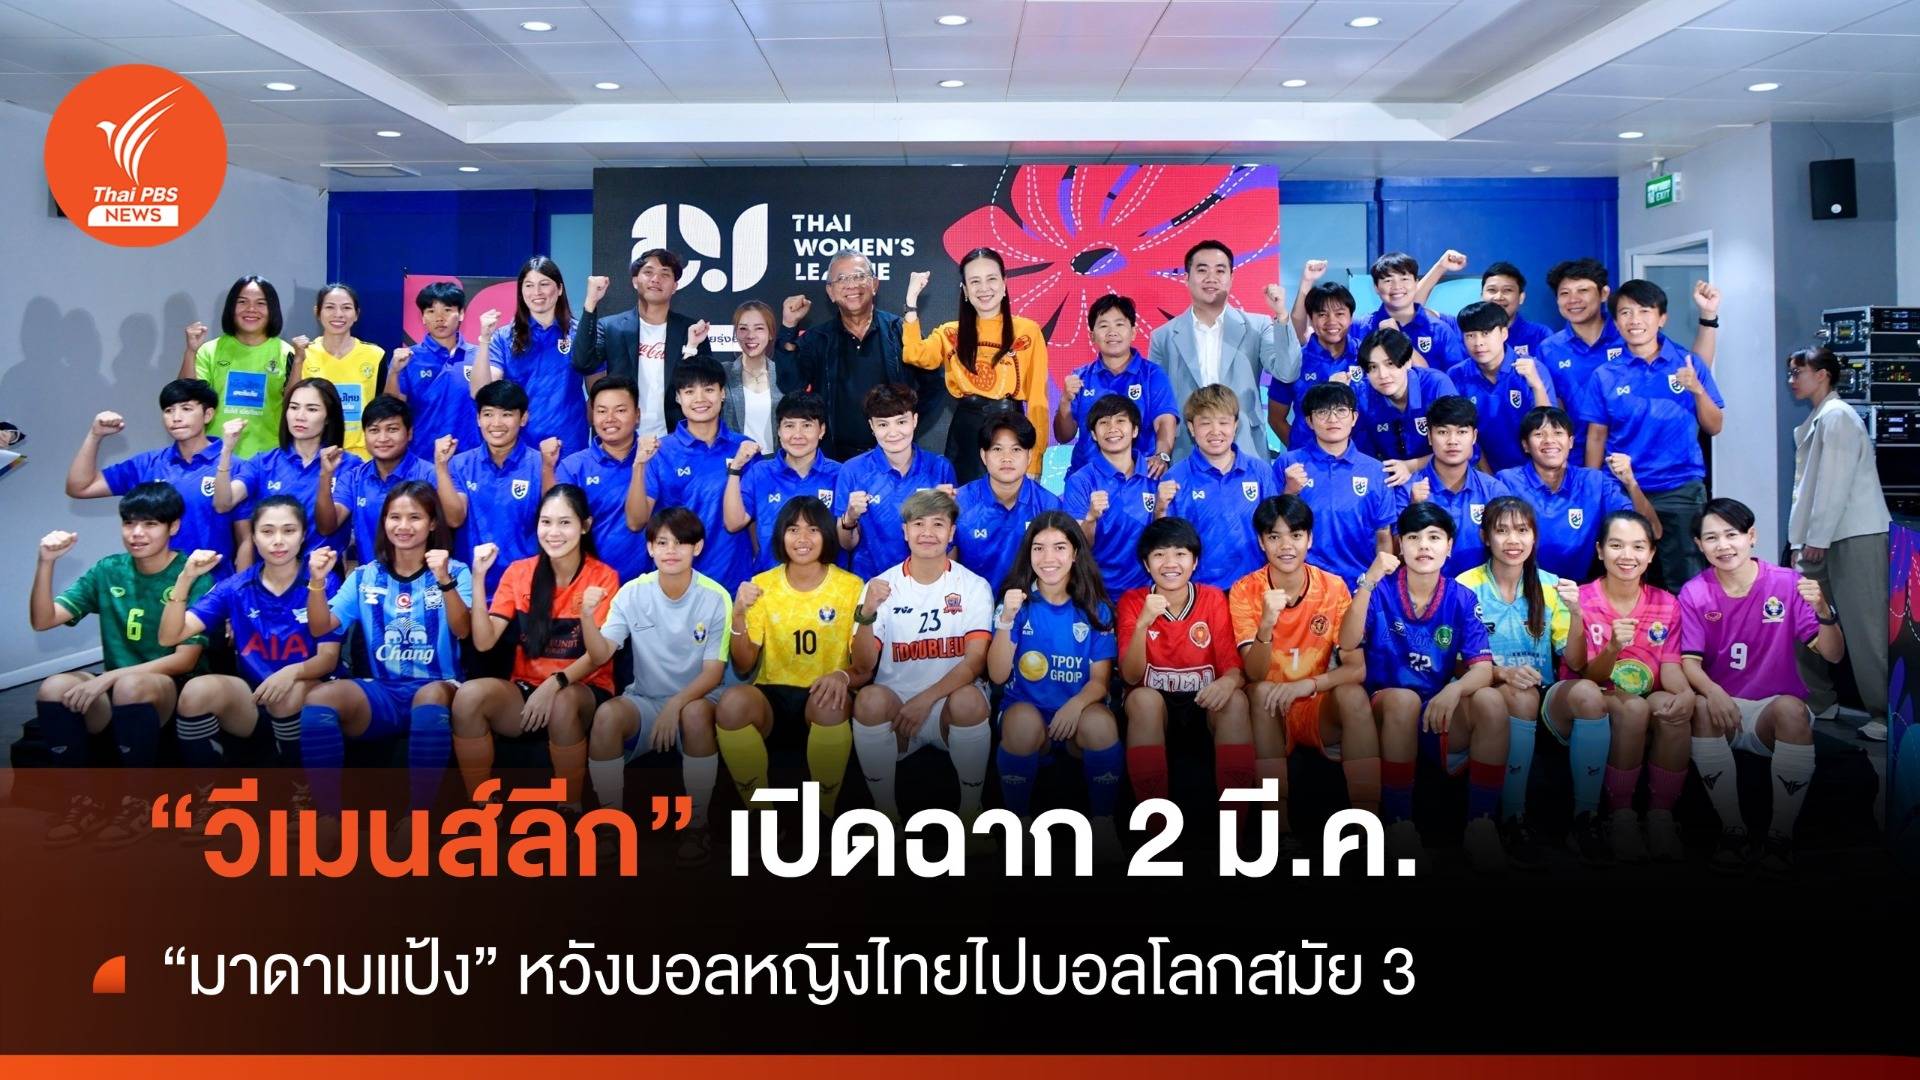 "มาดามแป้ง" หวังบอลหญิงไทยไปบอลโลกสมัย 3 - "วีเมนส์ลีก" เปิดฉาก 2 มี.ค.